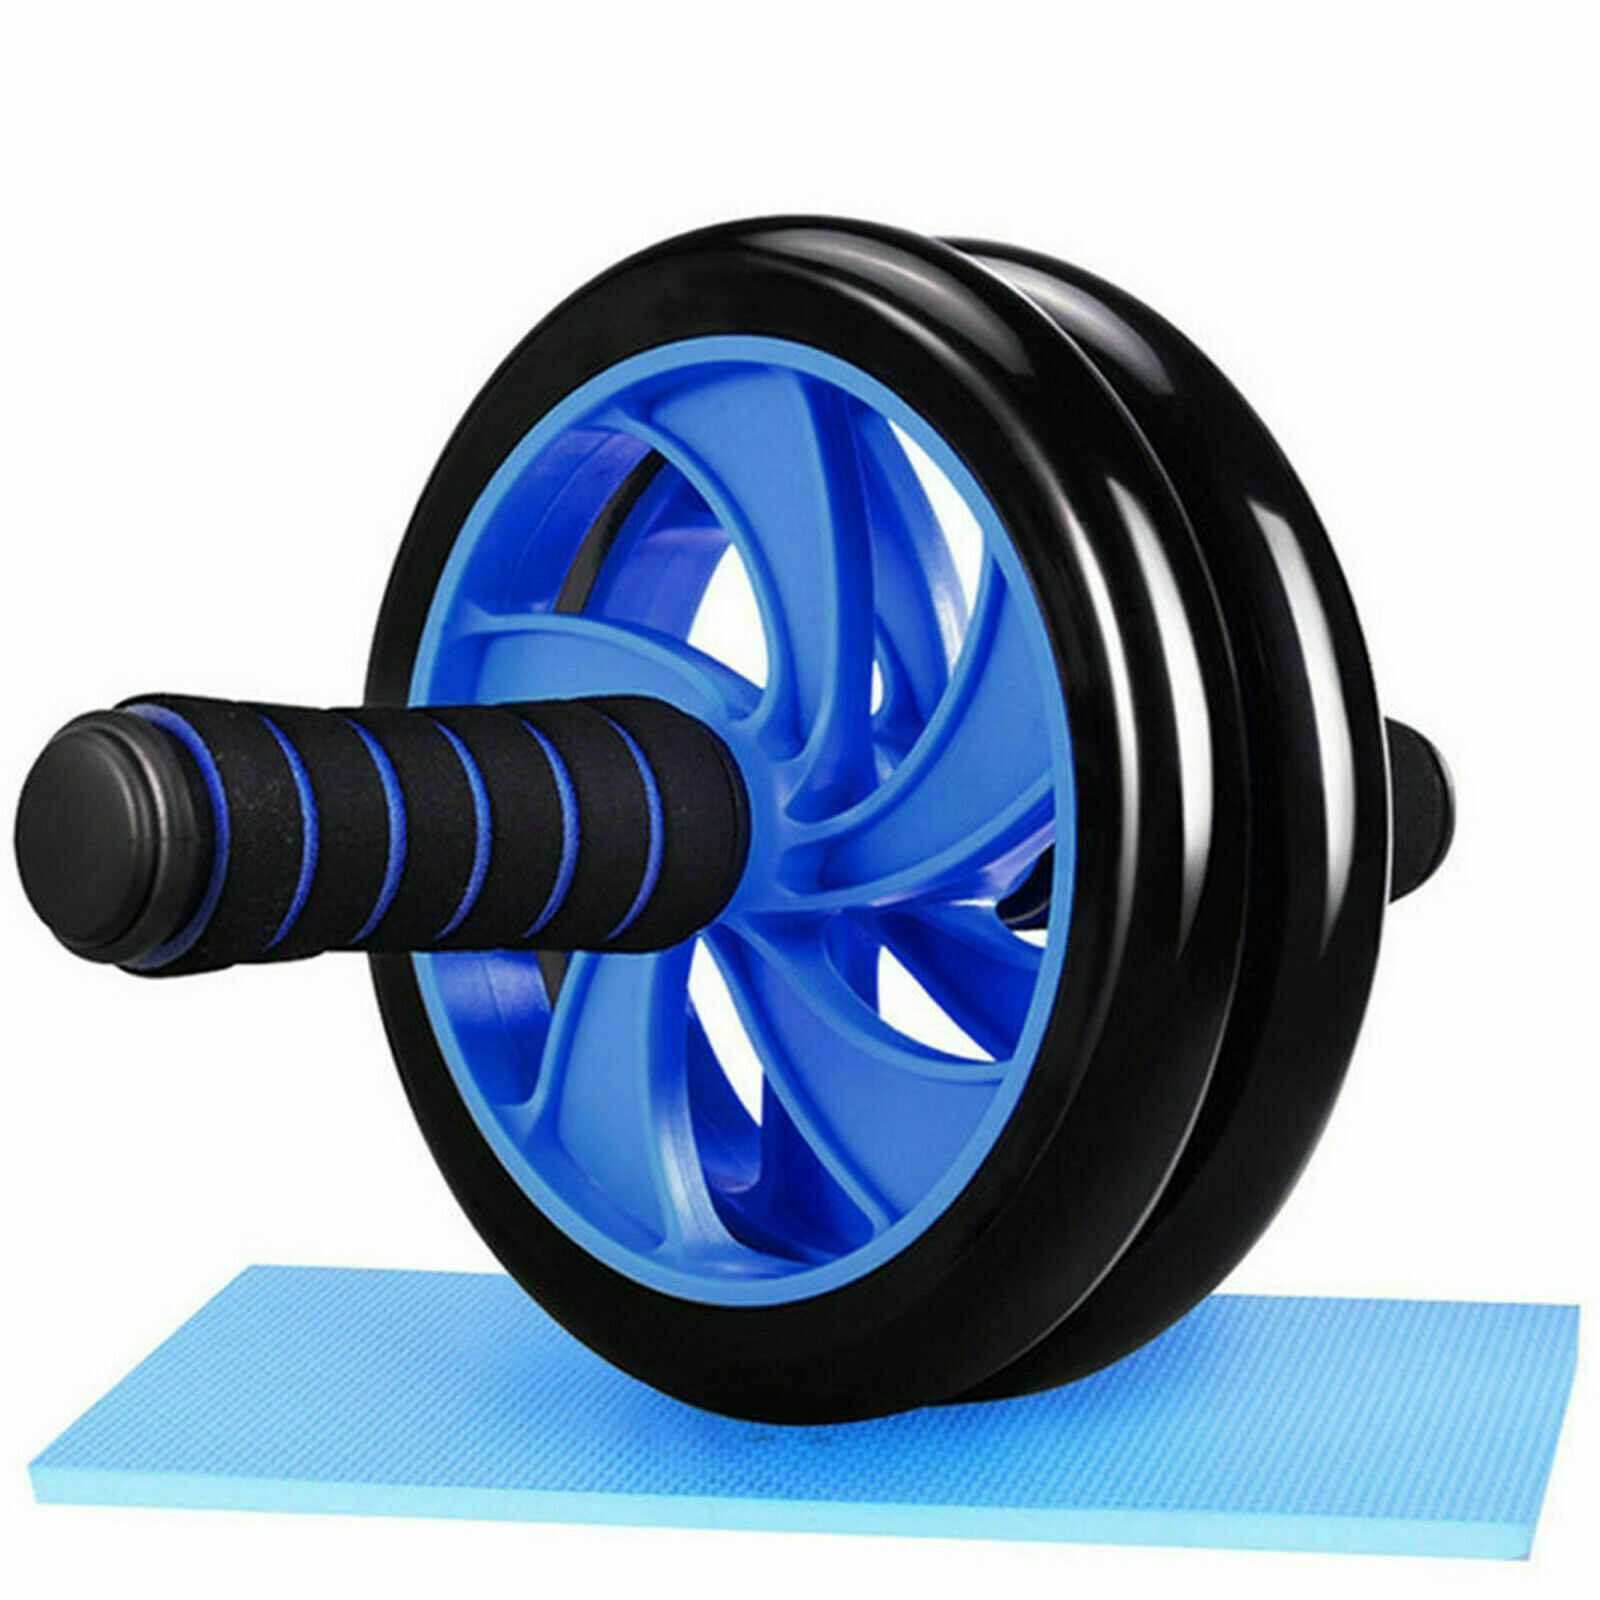 Roda muscular abdominal Fitness Home Dunlop